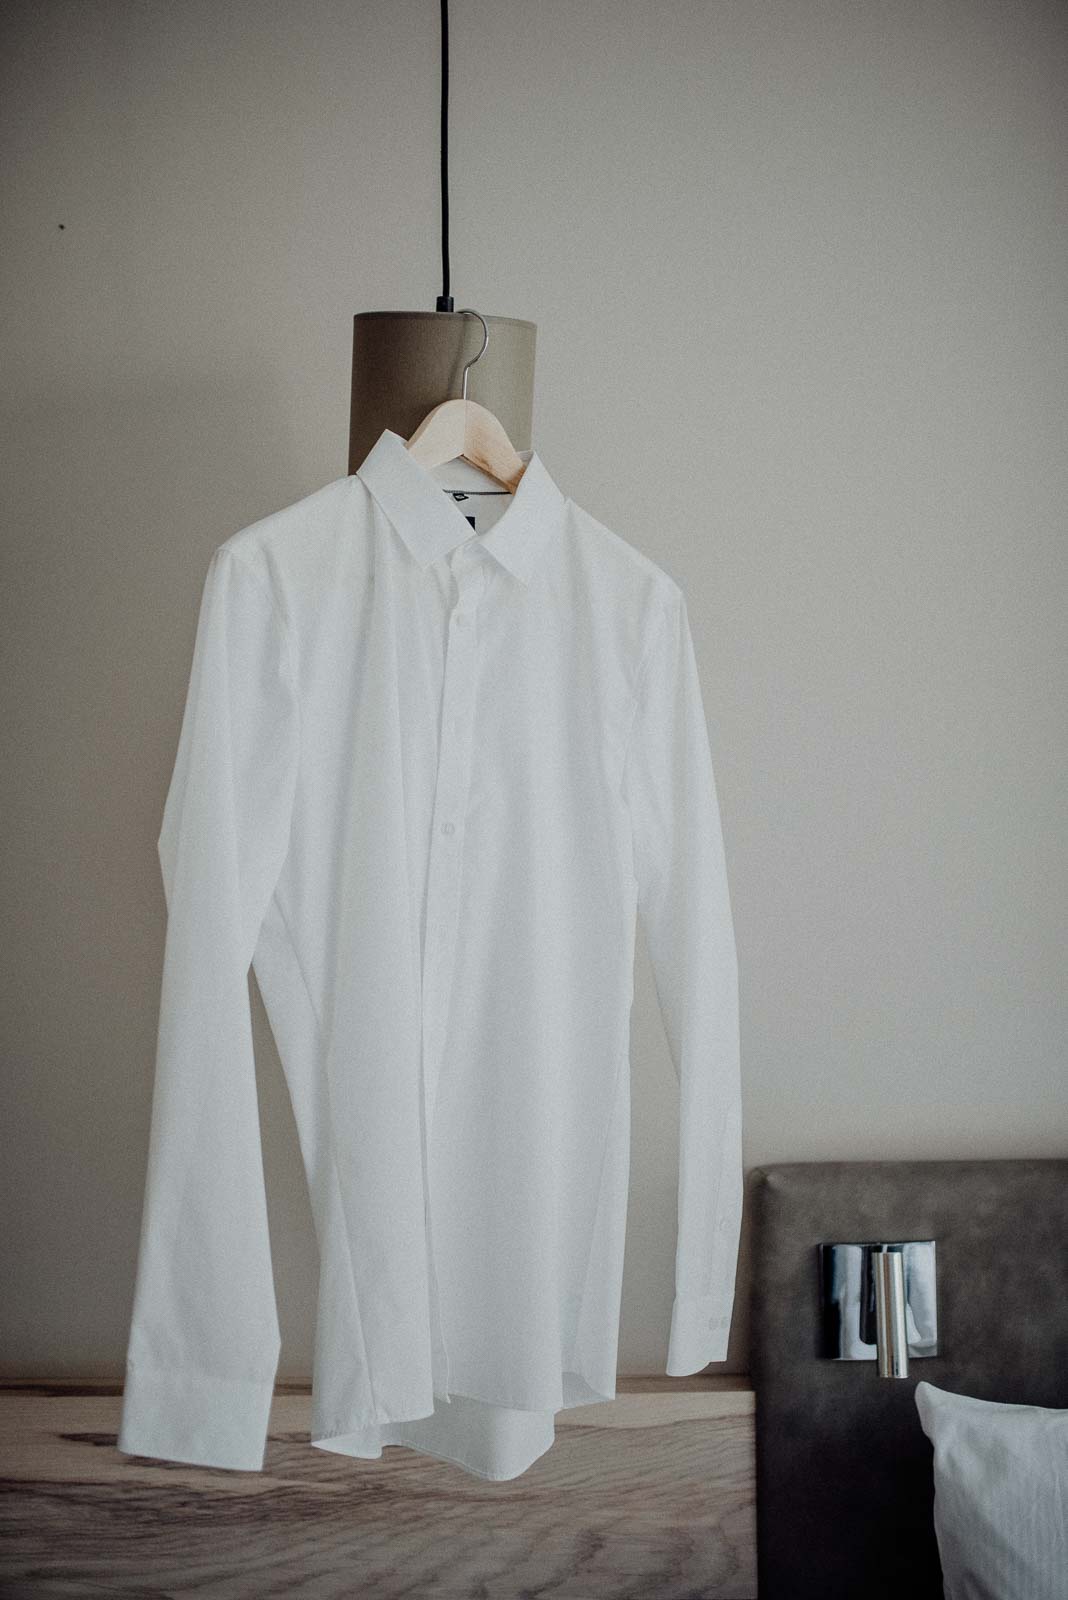 Das weiße Hemd des Bräutigams